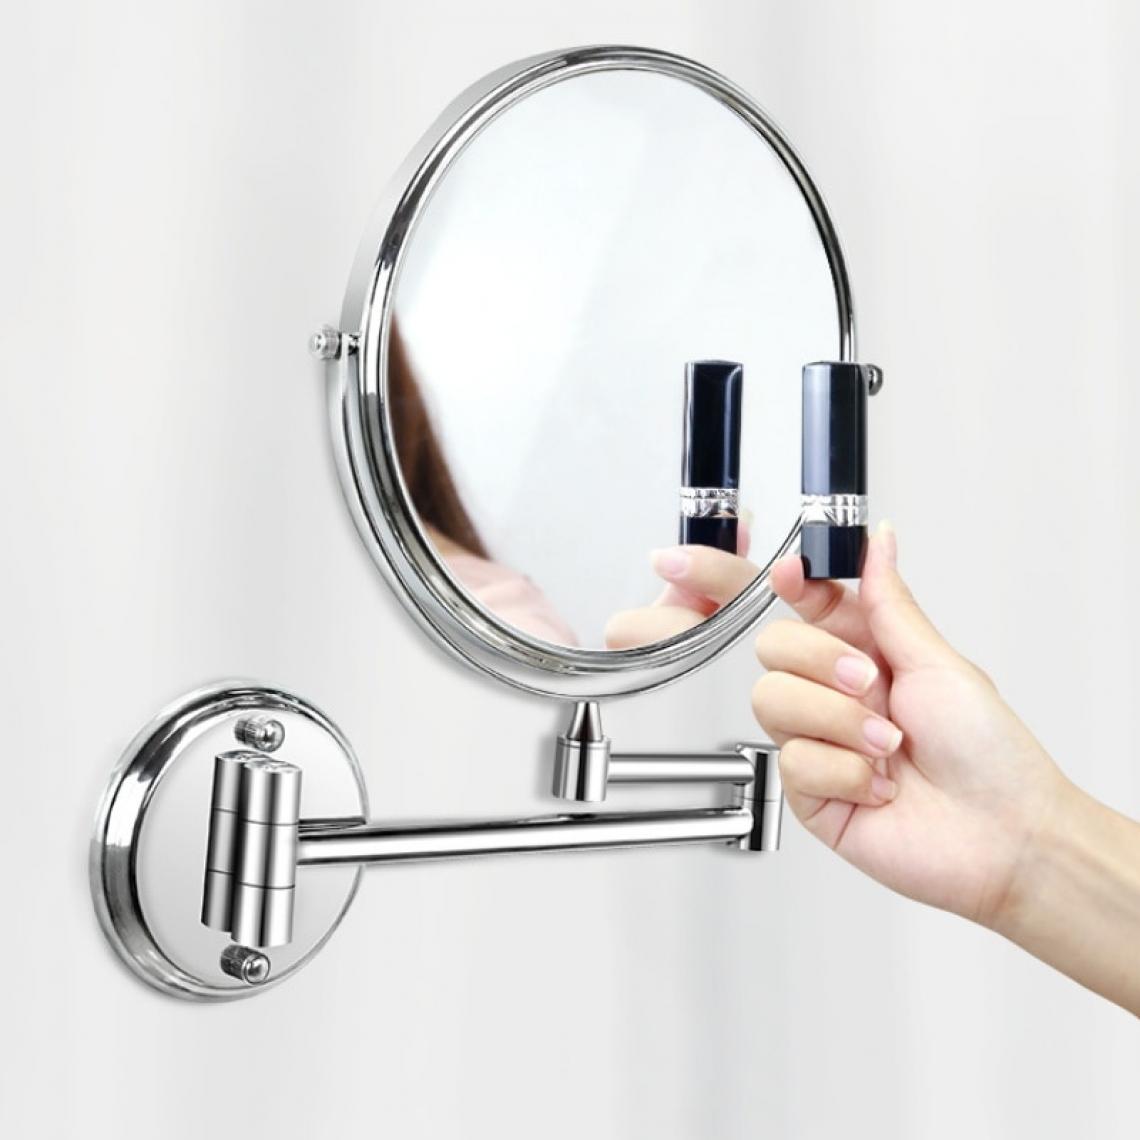 Universal - Miroir de toilette de la salle de bains, miroir de toilette mural de la salle de bains, miroir rétractable et double miroir pliant(Argent) - Miroir de salle de bain